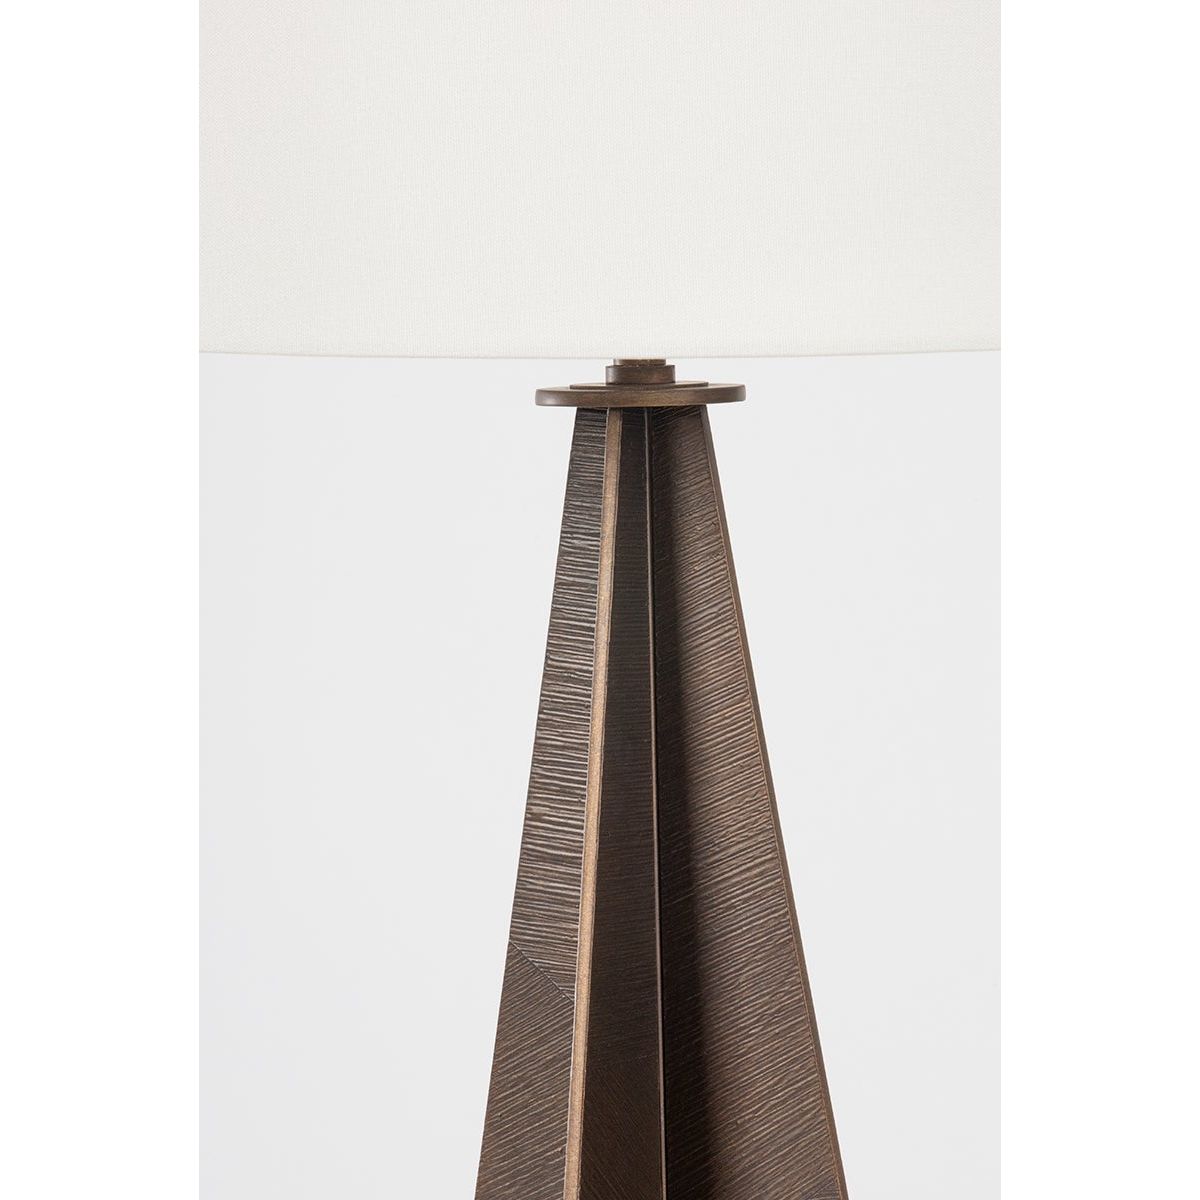 Finn 1-Light Table Lamp